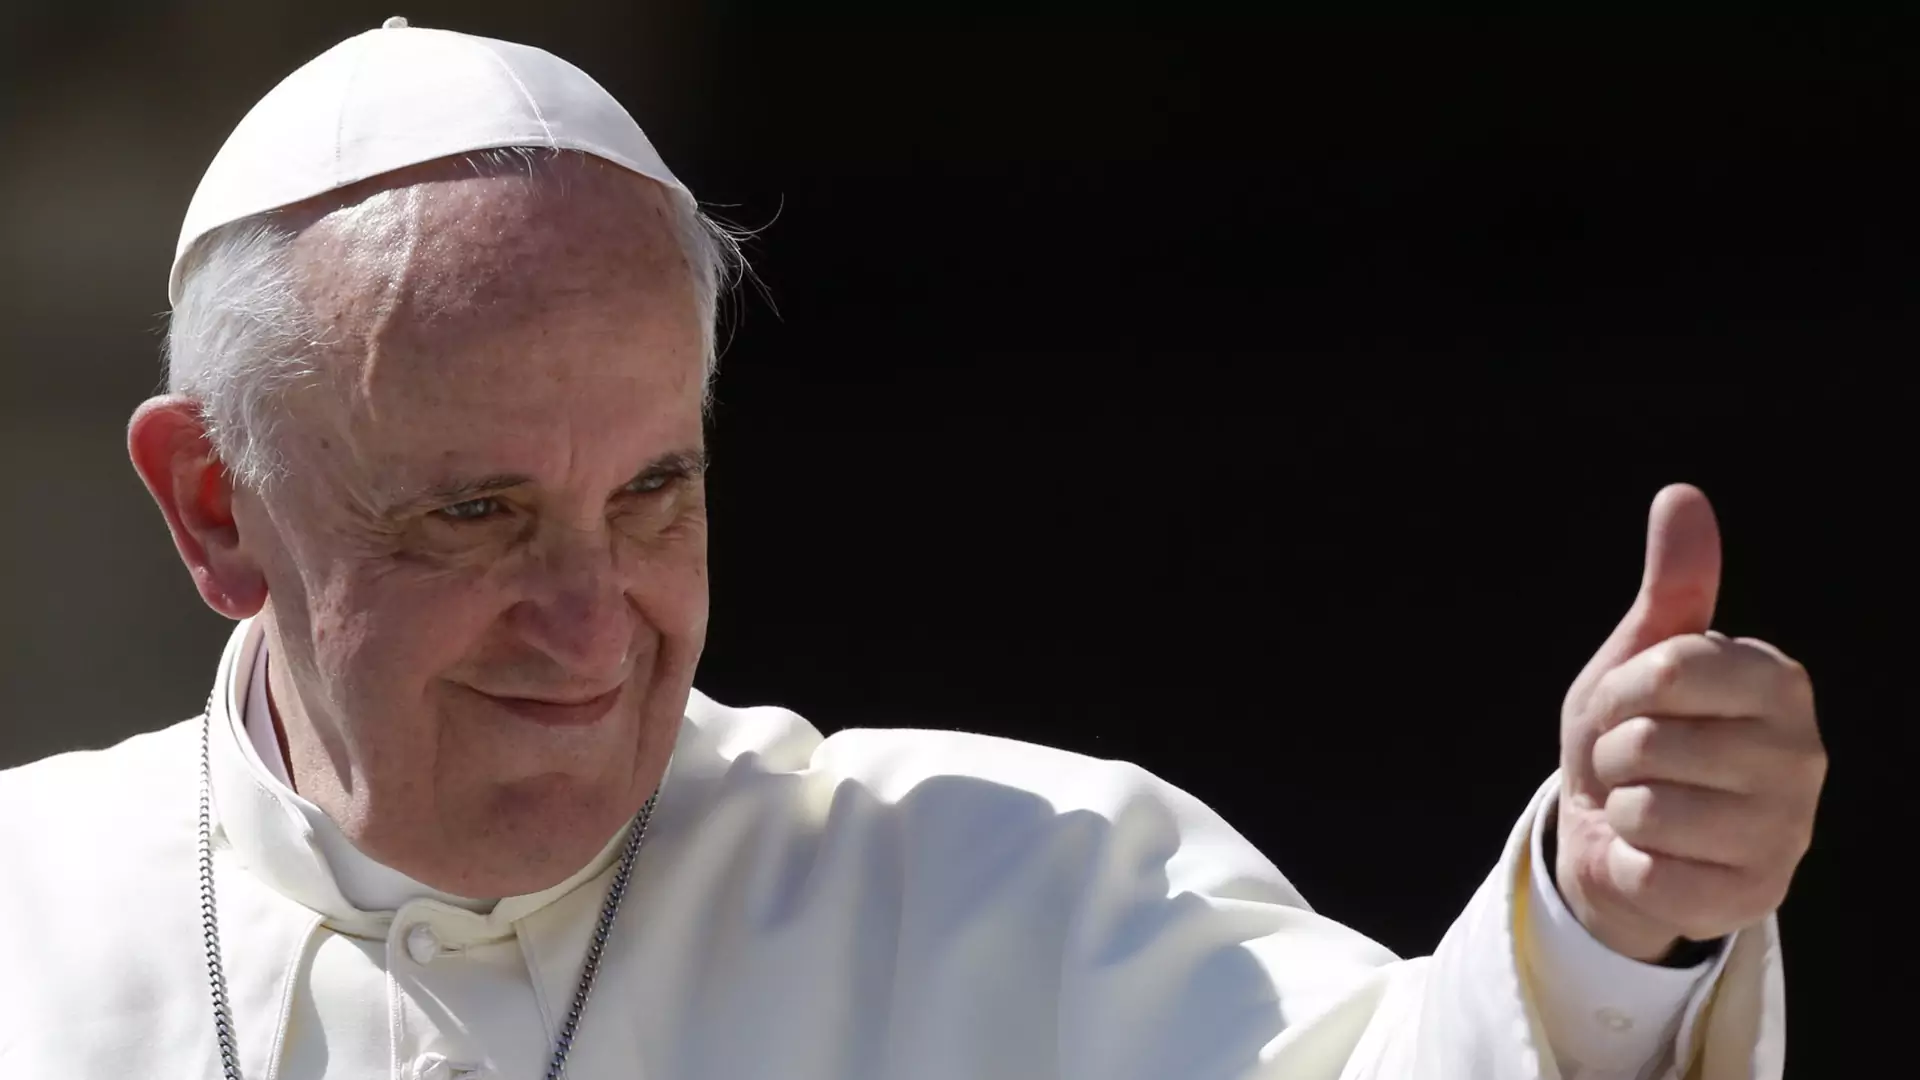 Wielki moment dla Kościoła. Papież Franciszek poparł związki partnerskie